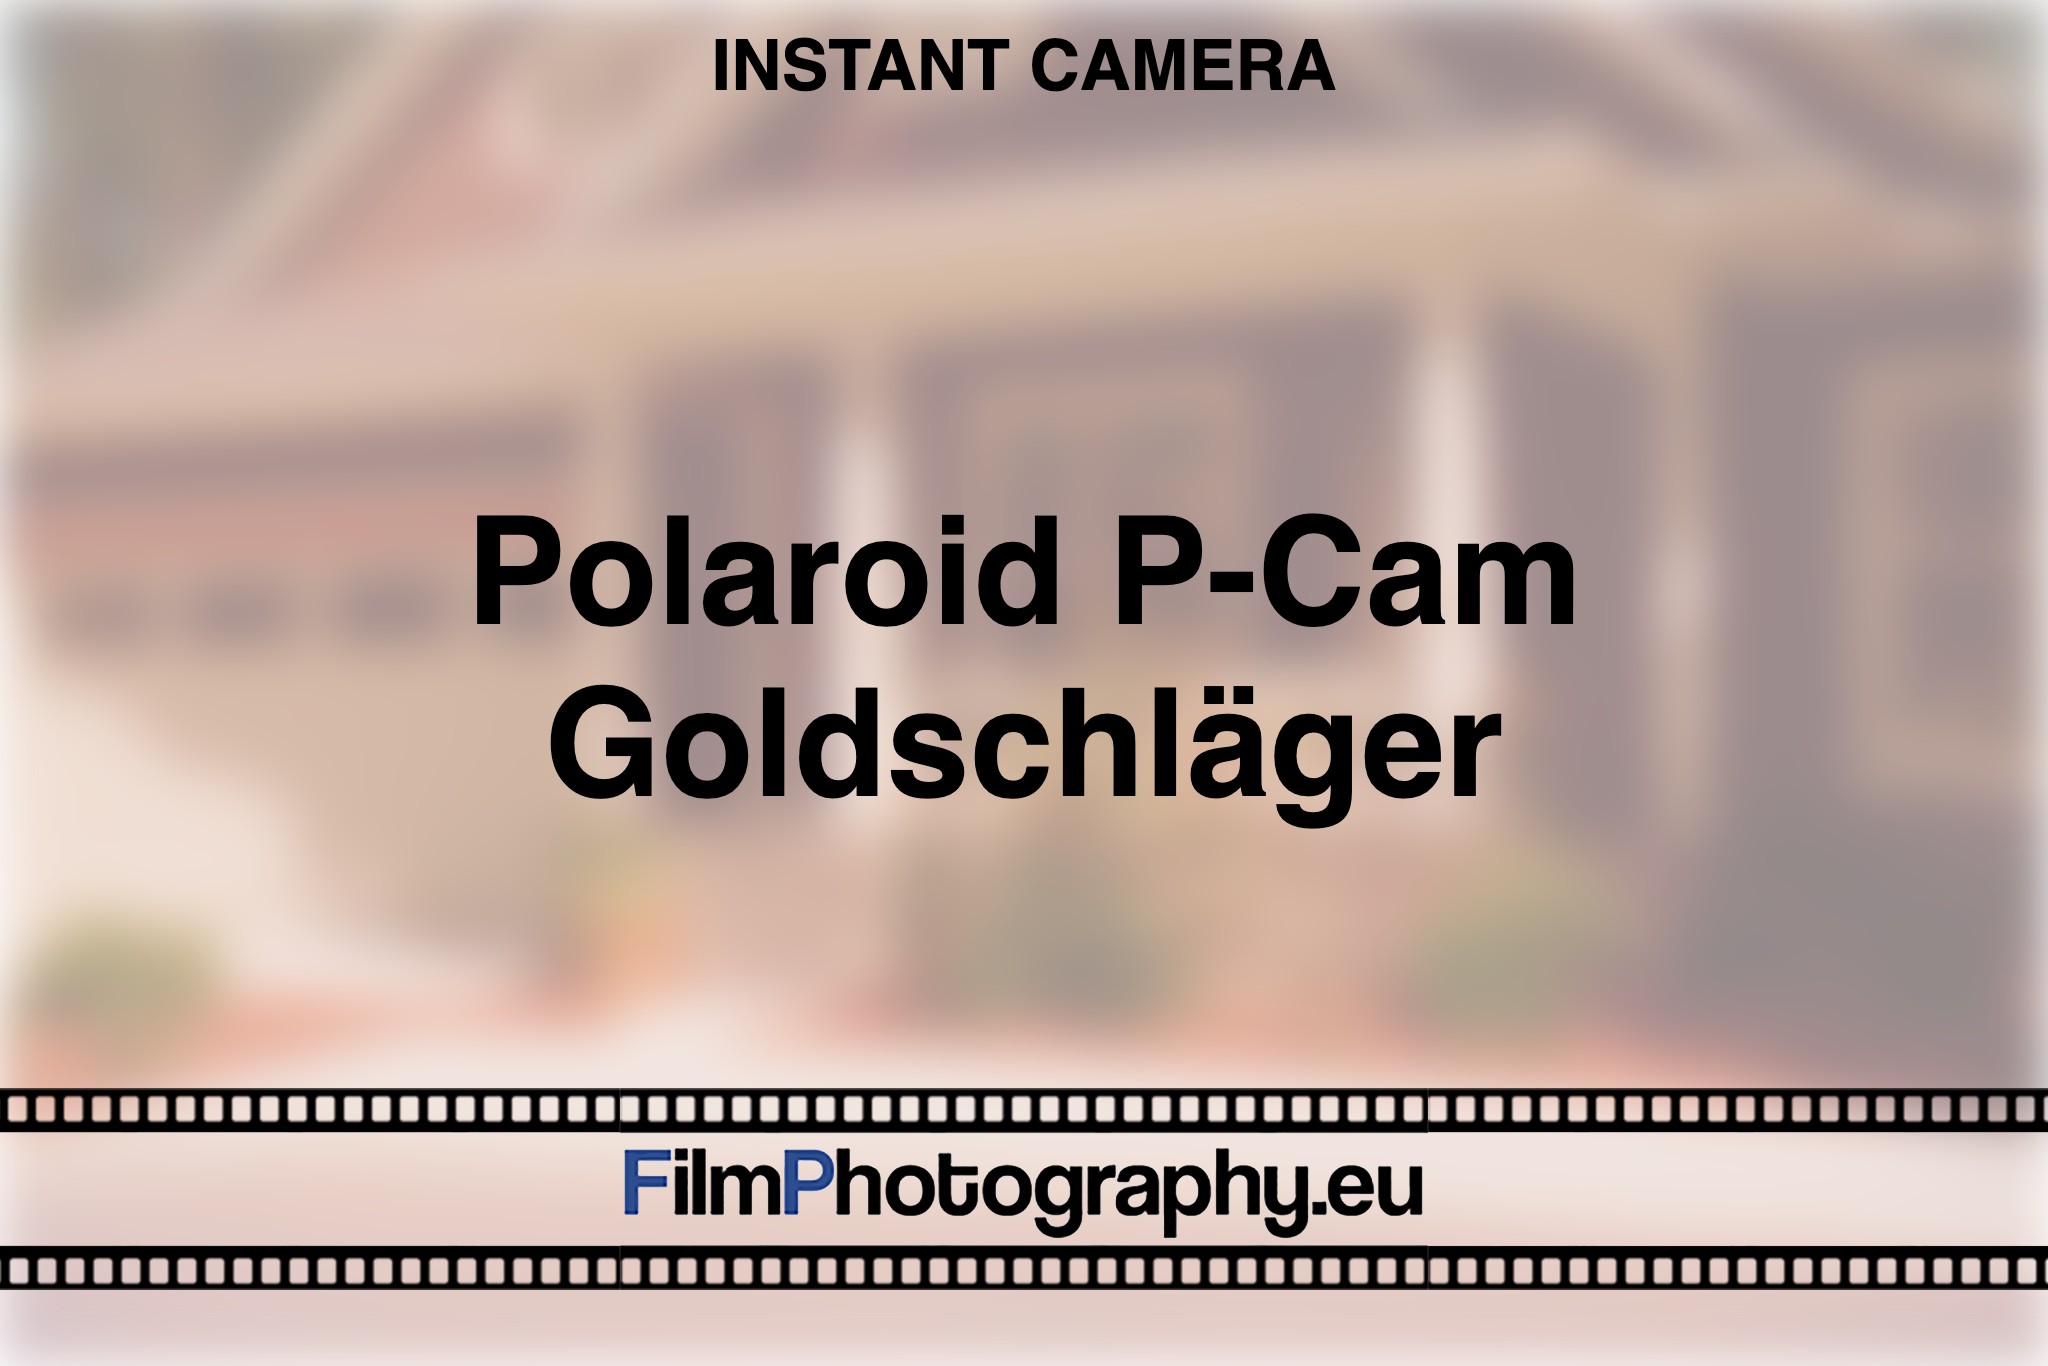 polaroid-p-cam-goldschlaeger-instant-camera-bnv